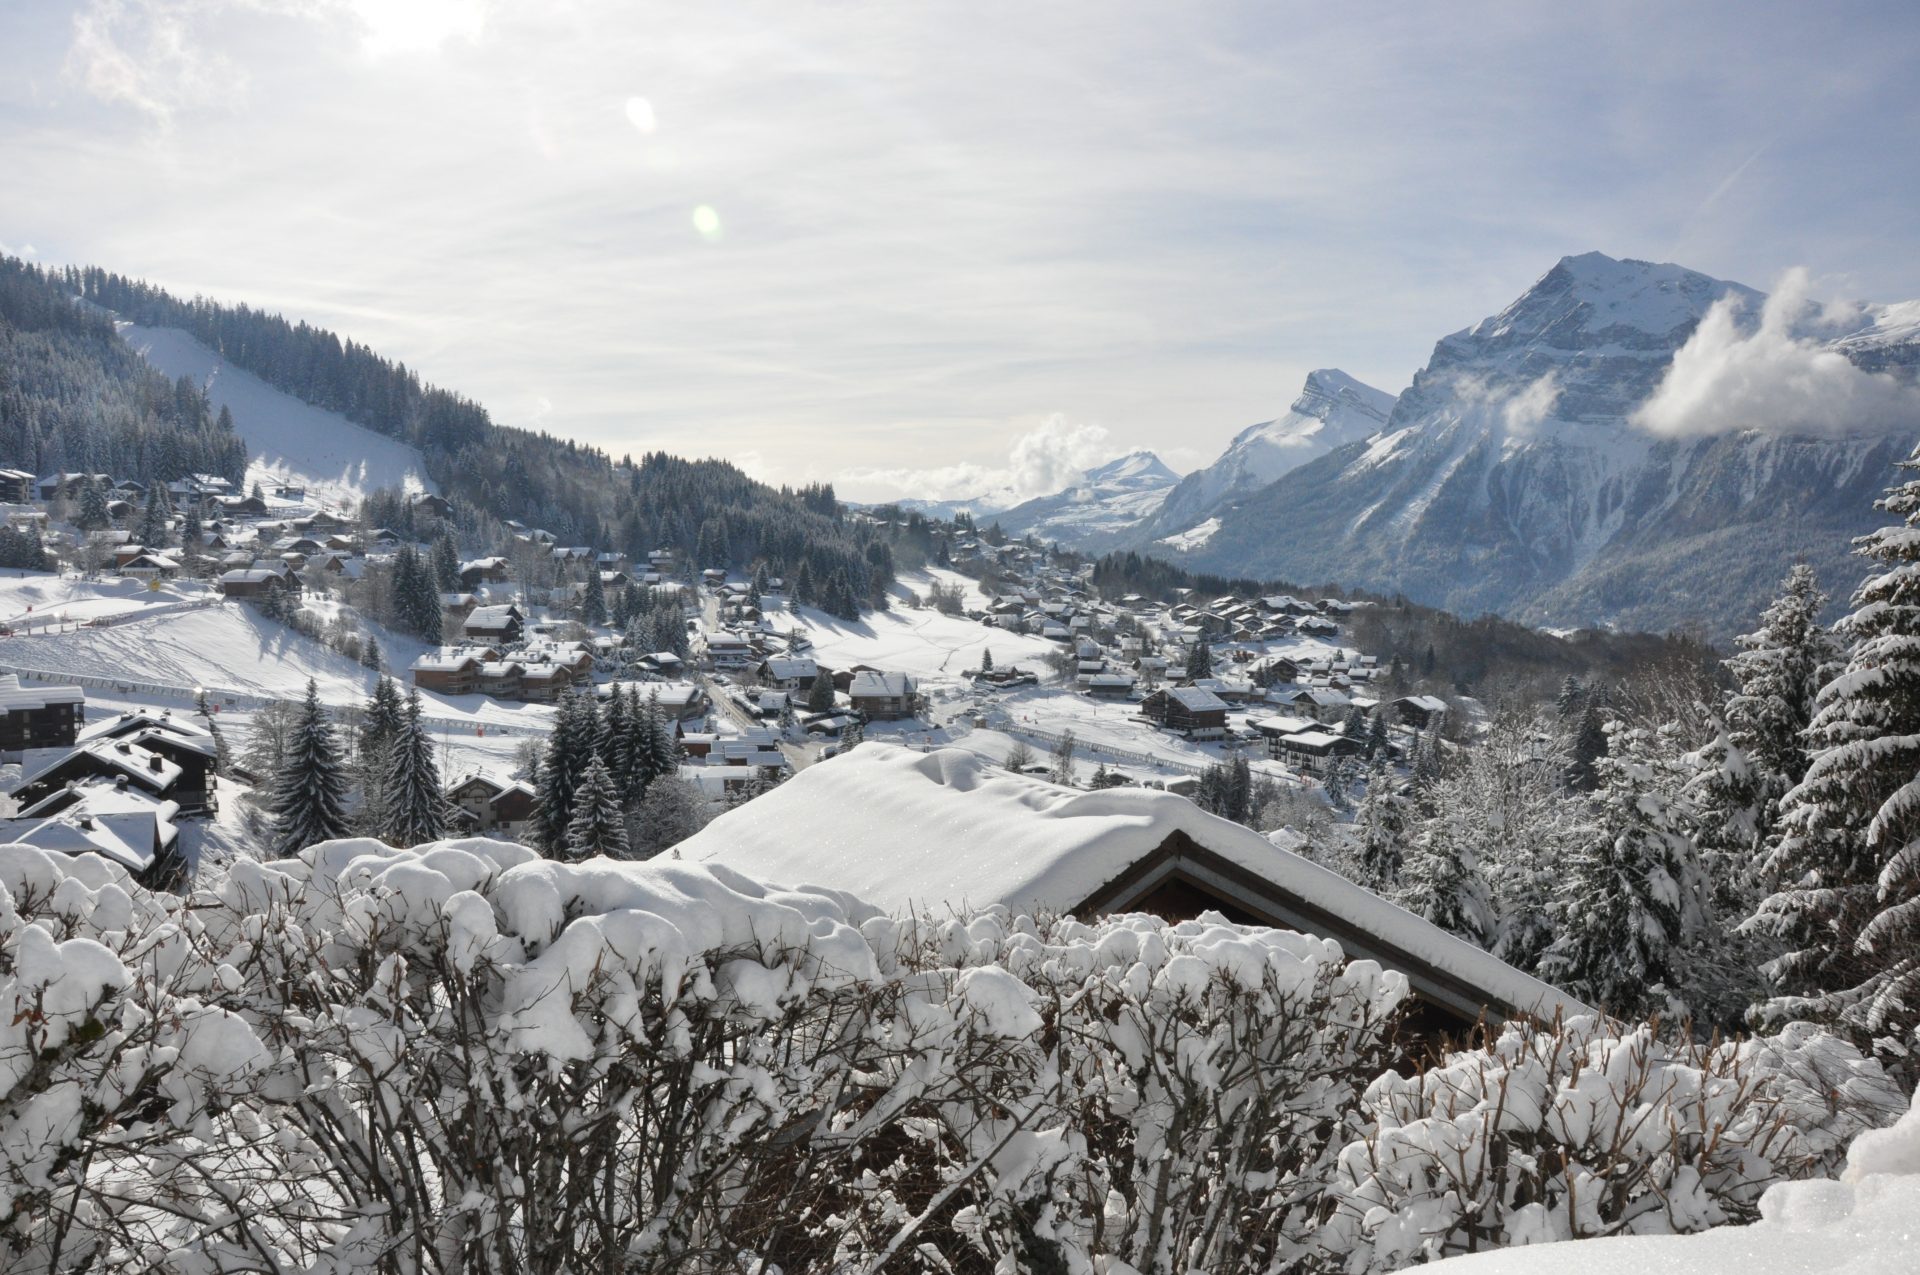 Porte d’entrée du domaine skiable XXL du Grand Massif, la station-village des Carroz déroule son tapis blanc et offre ses pistes de toutes les couleurs. OT Les Carroz.